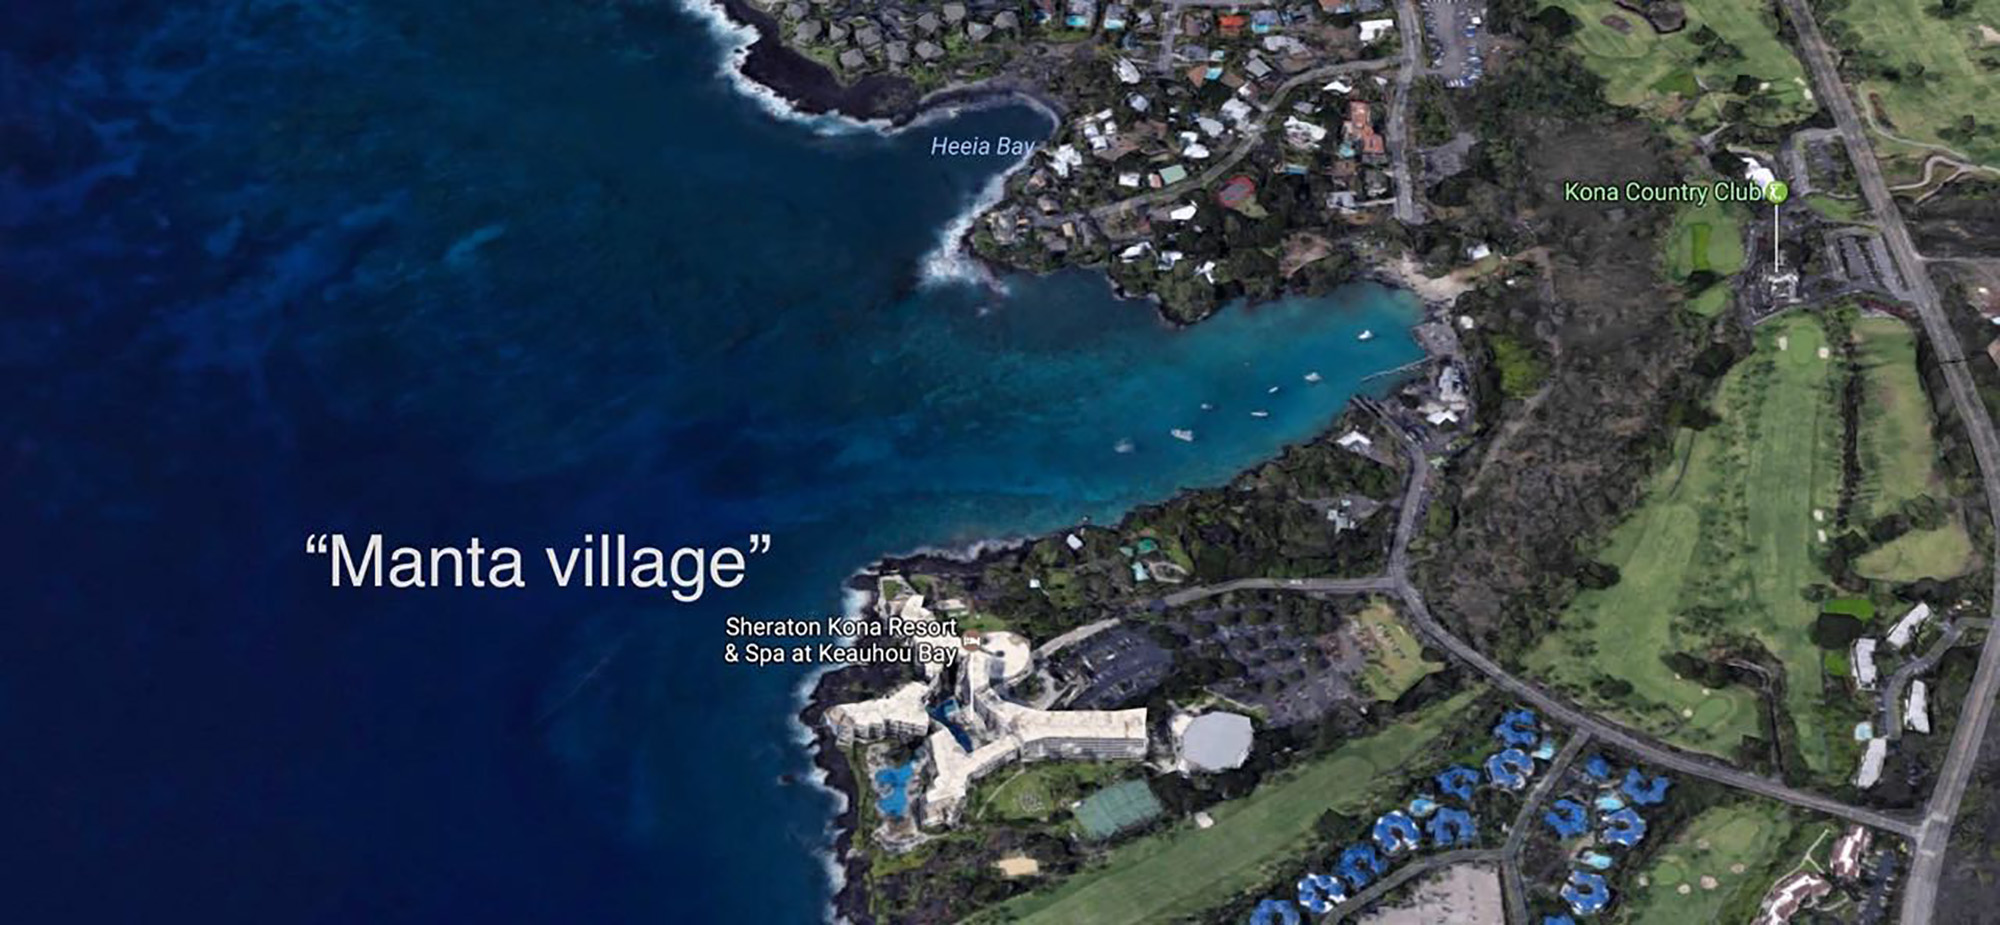 Manta Village on the Big Island of Hawaii